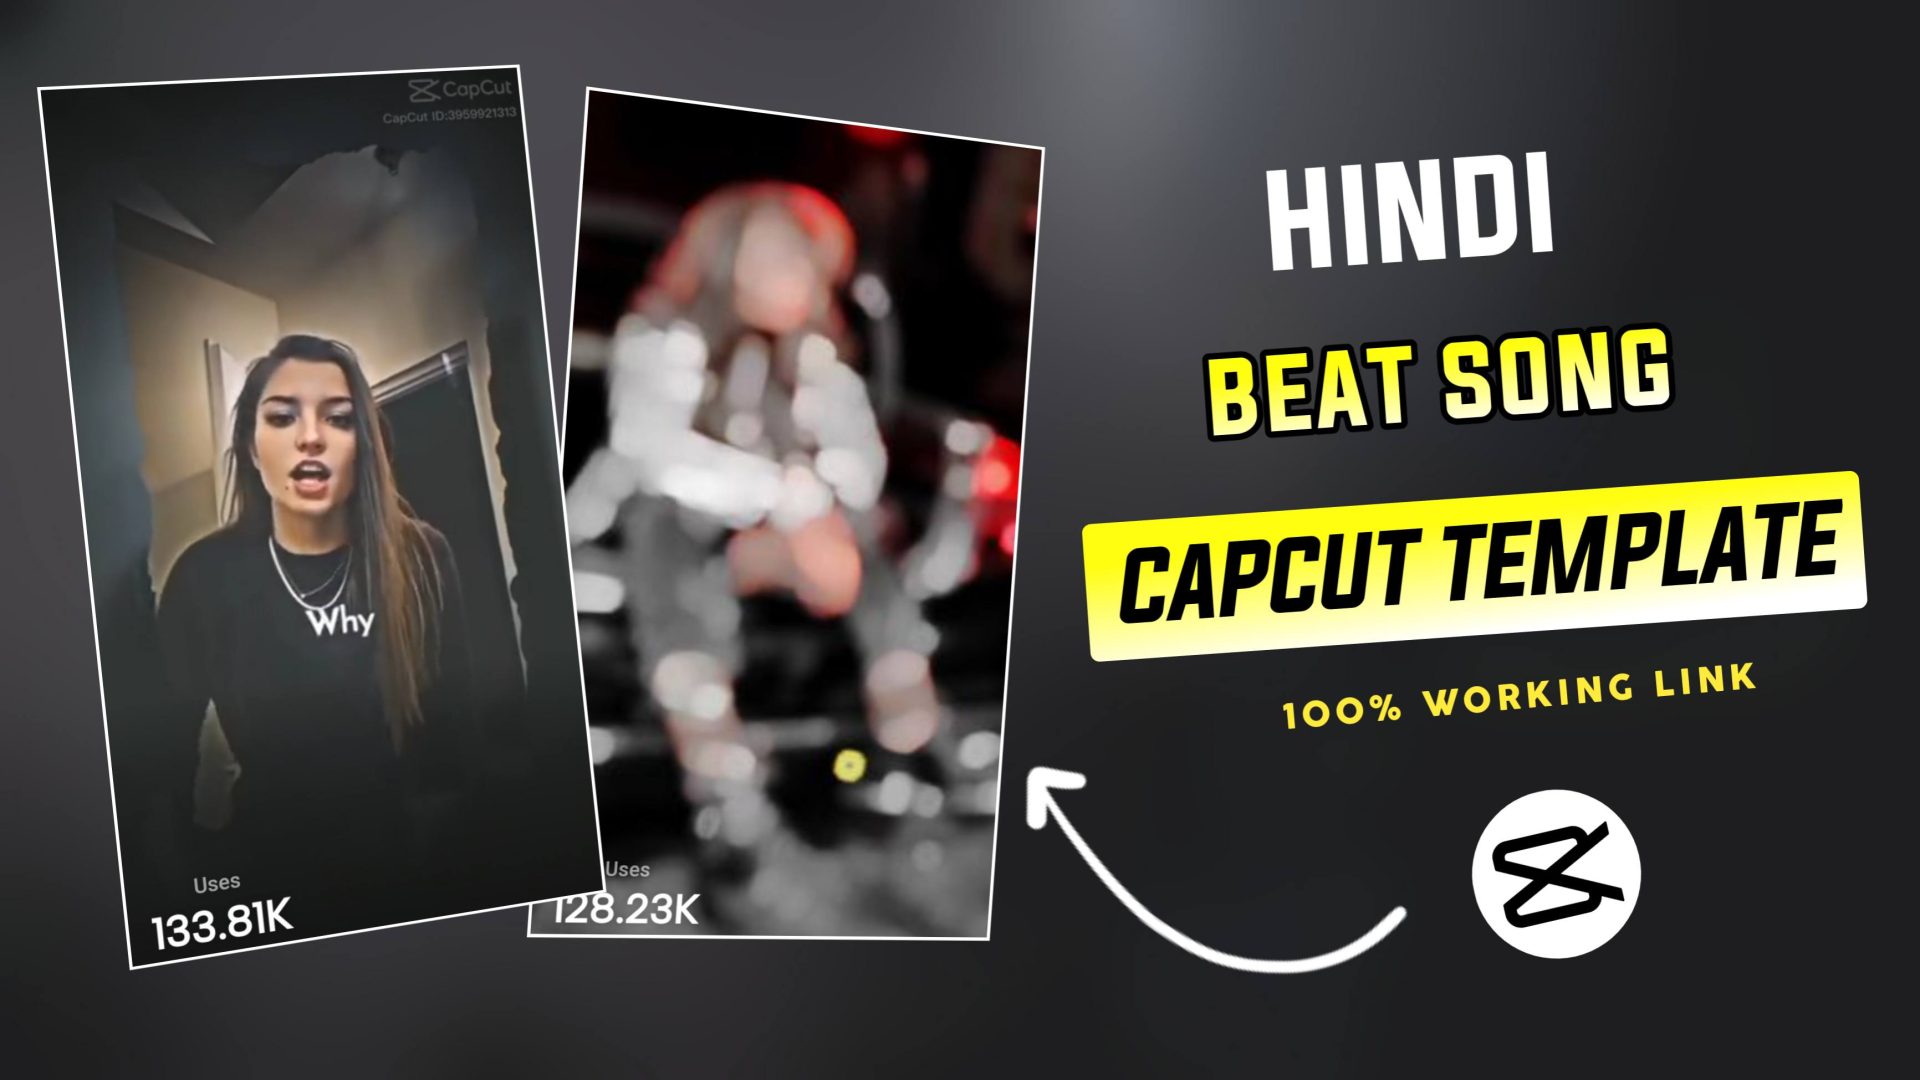 Hindi Beat Song CapCut Template